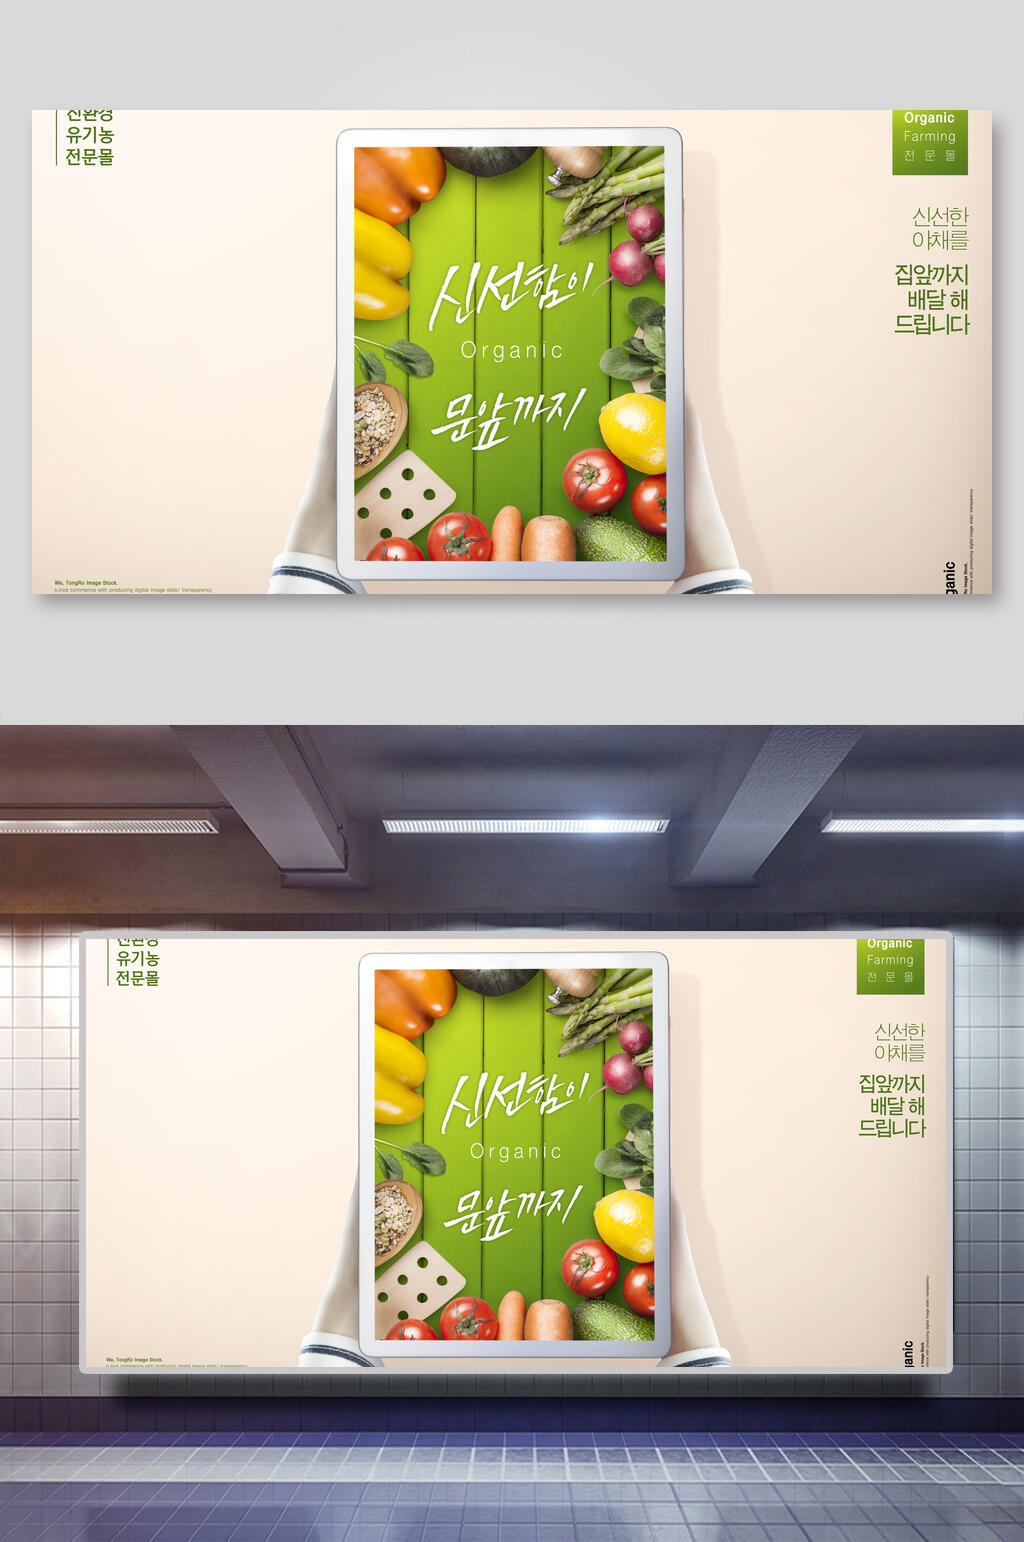 时尚简约蔬果生鲜超市宣传海报展板